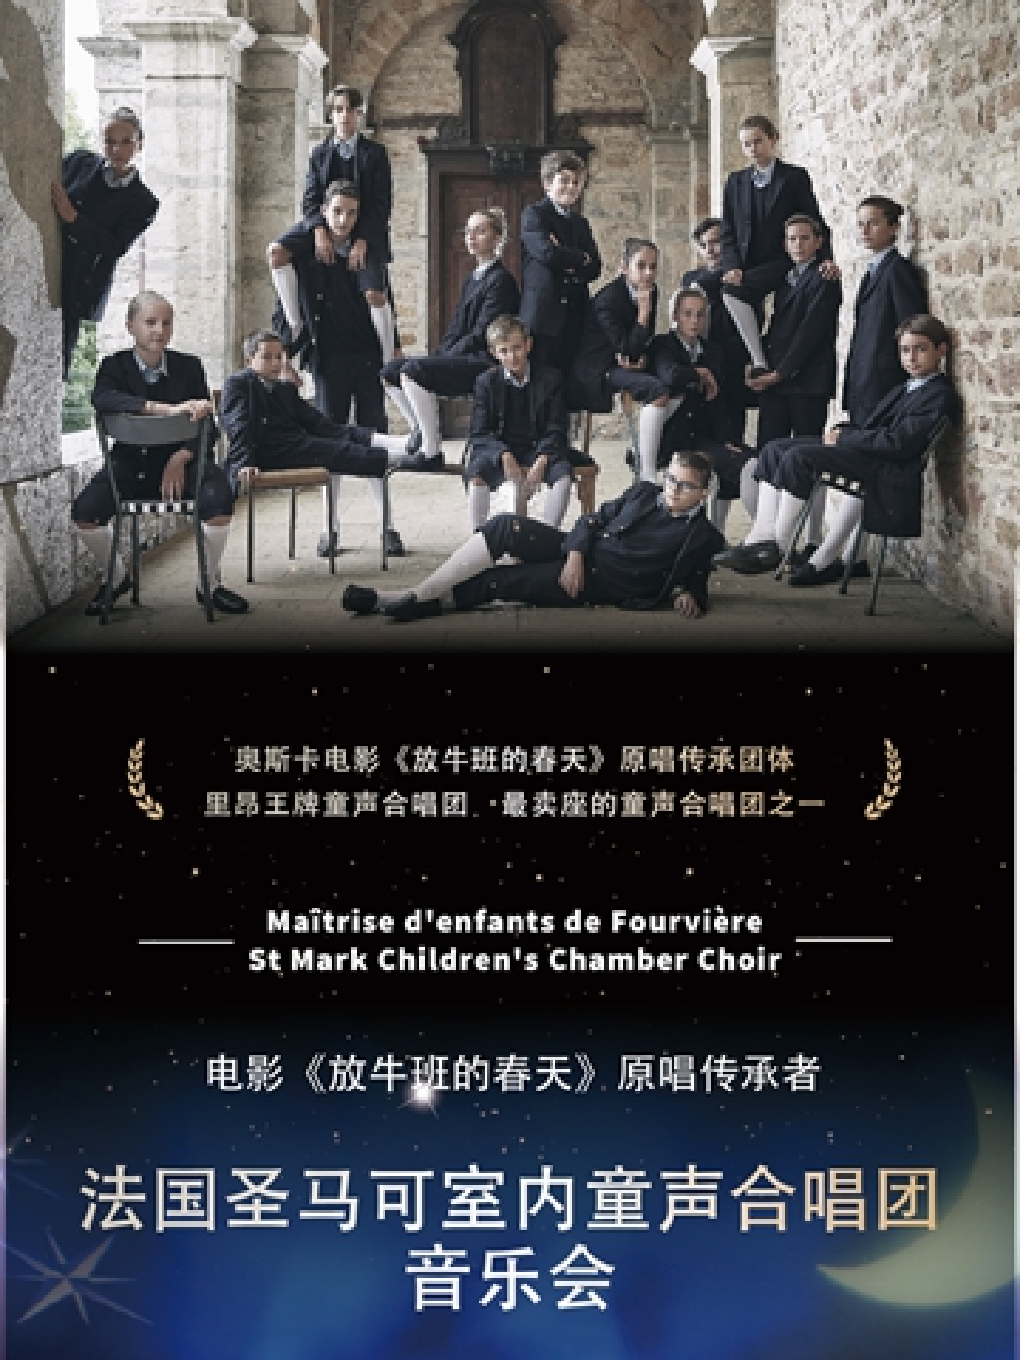 上海电影《放牛班的春天》原唱传承者-法国圣马可室内童声合唱团音乐会